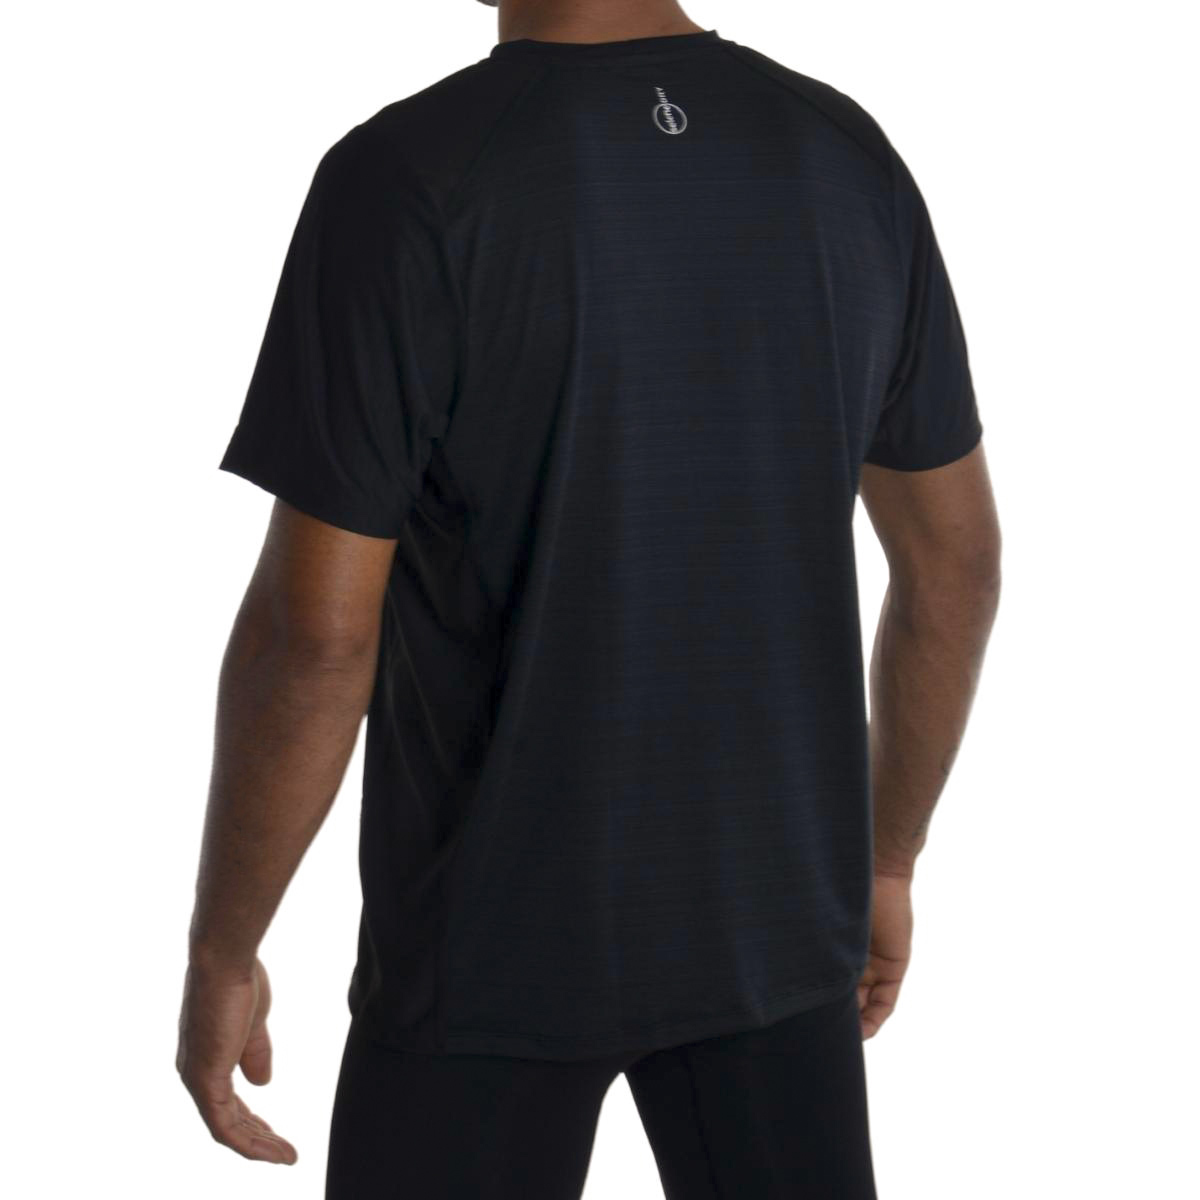 Camiseta dry fit masculina Selene